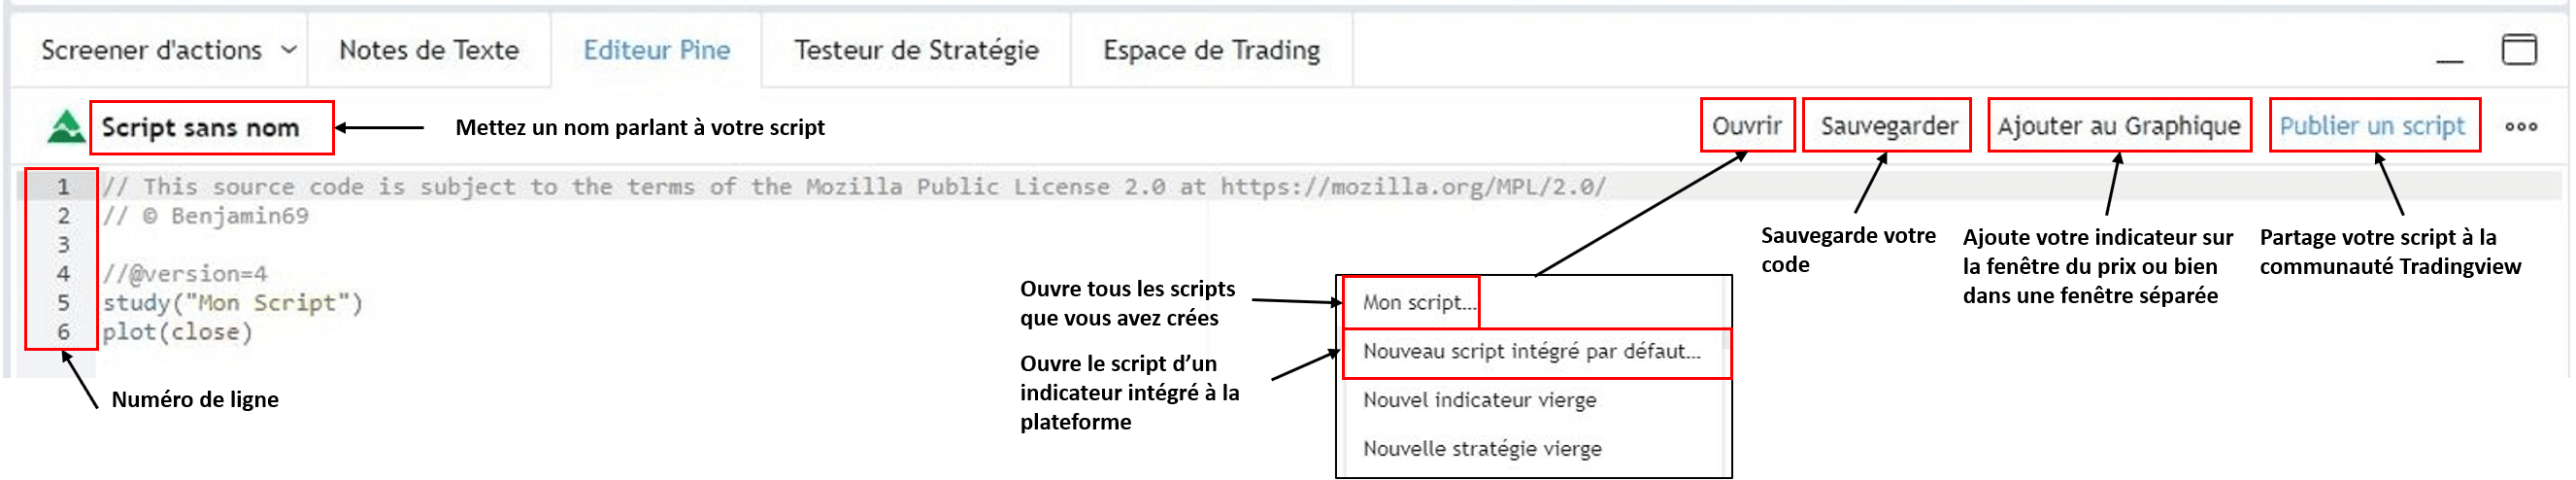 Nouveau script interface Tradingview